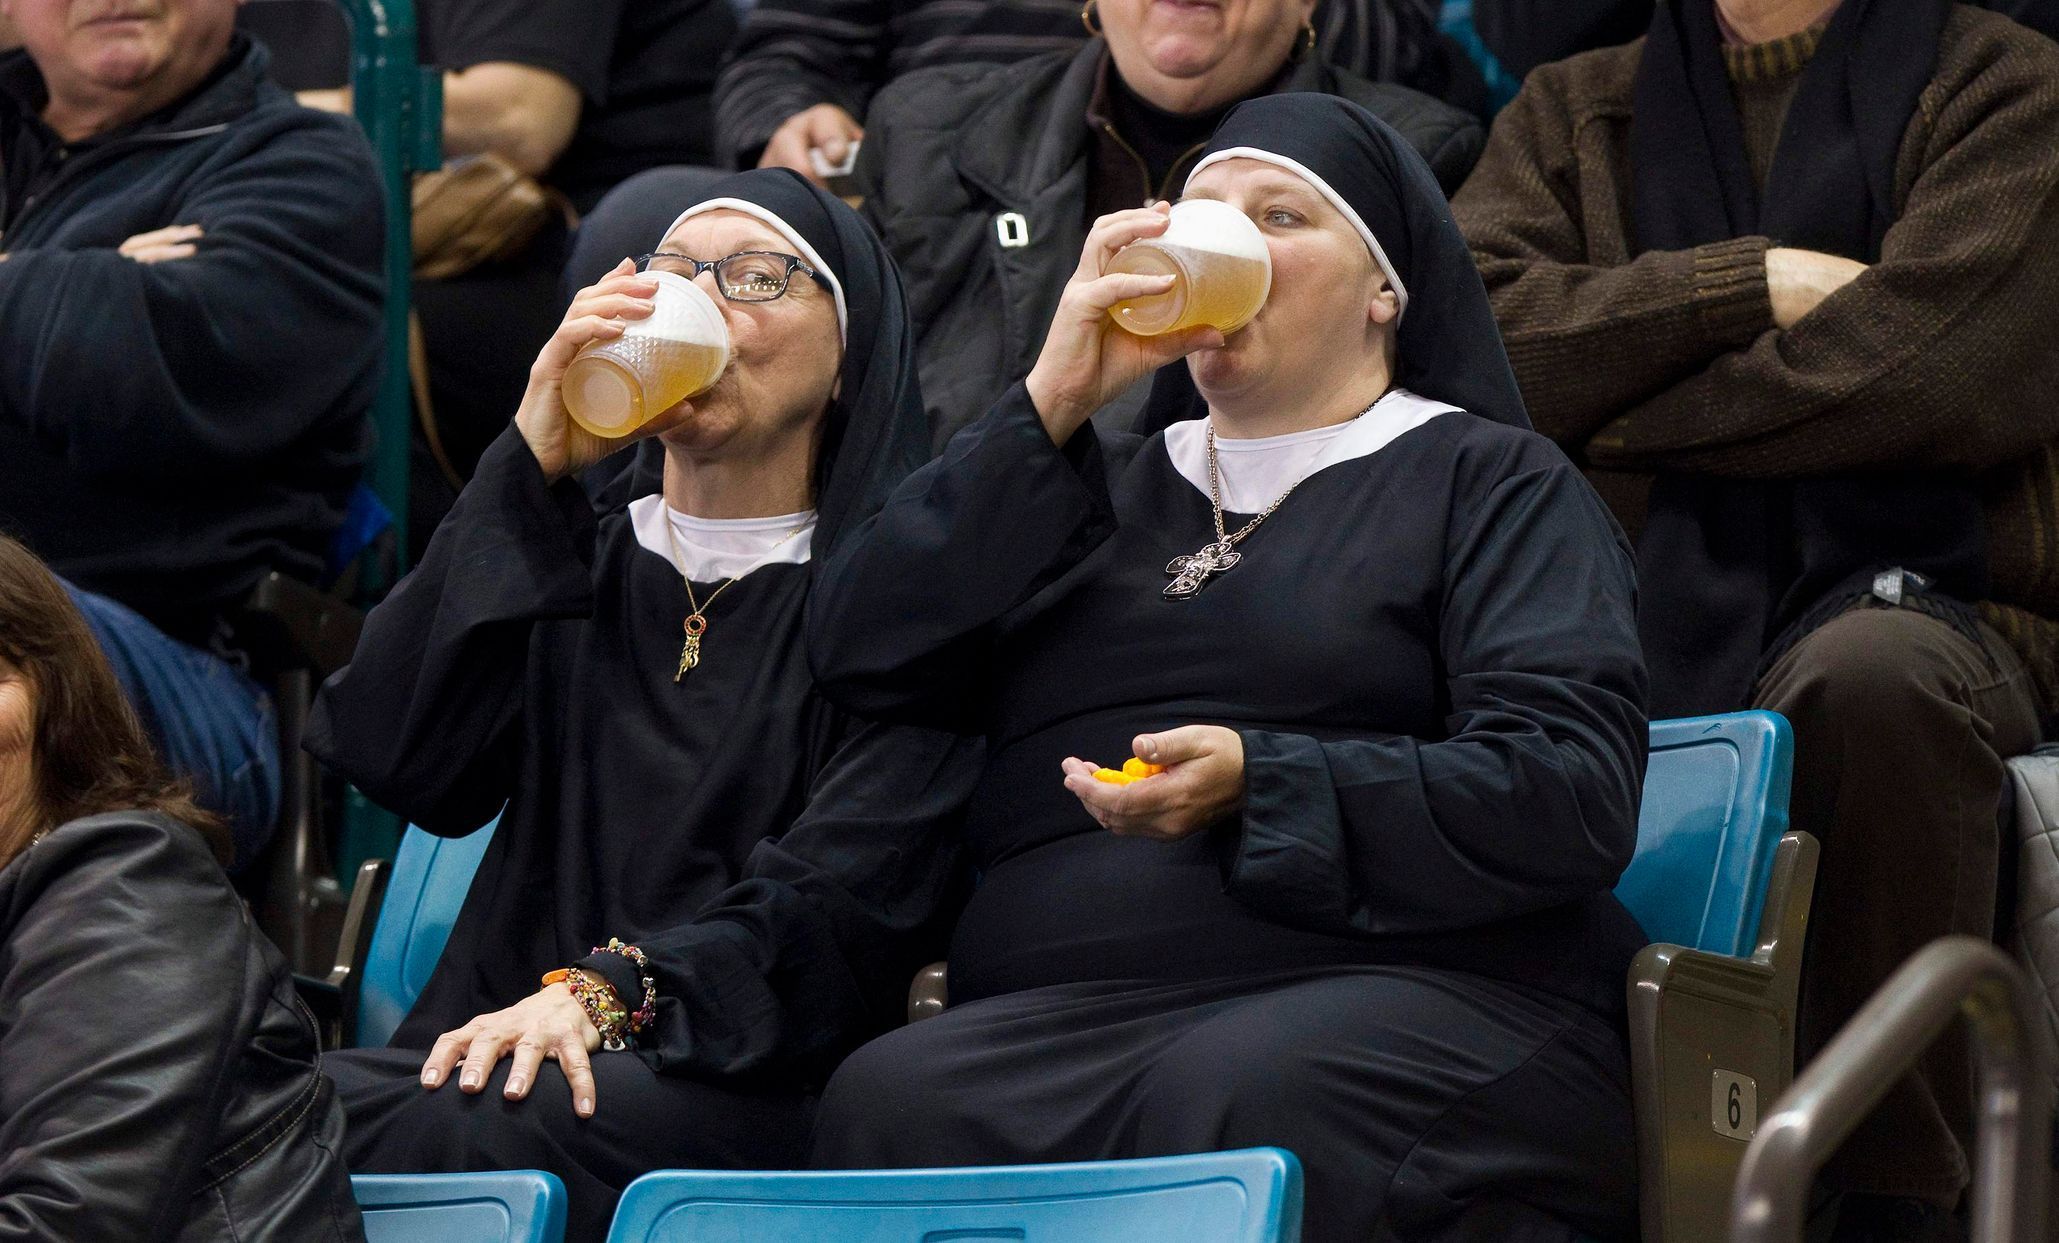 Nejlepší fotky roku 2014: Jeptišky pijí pivo